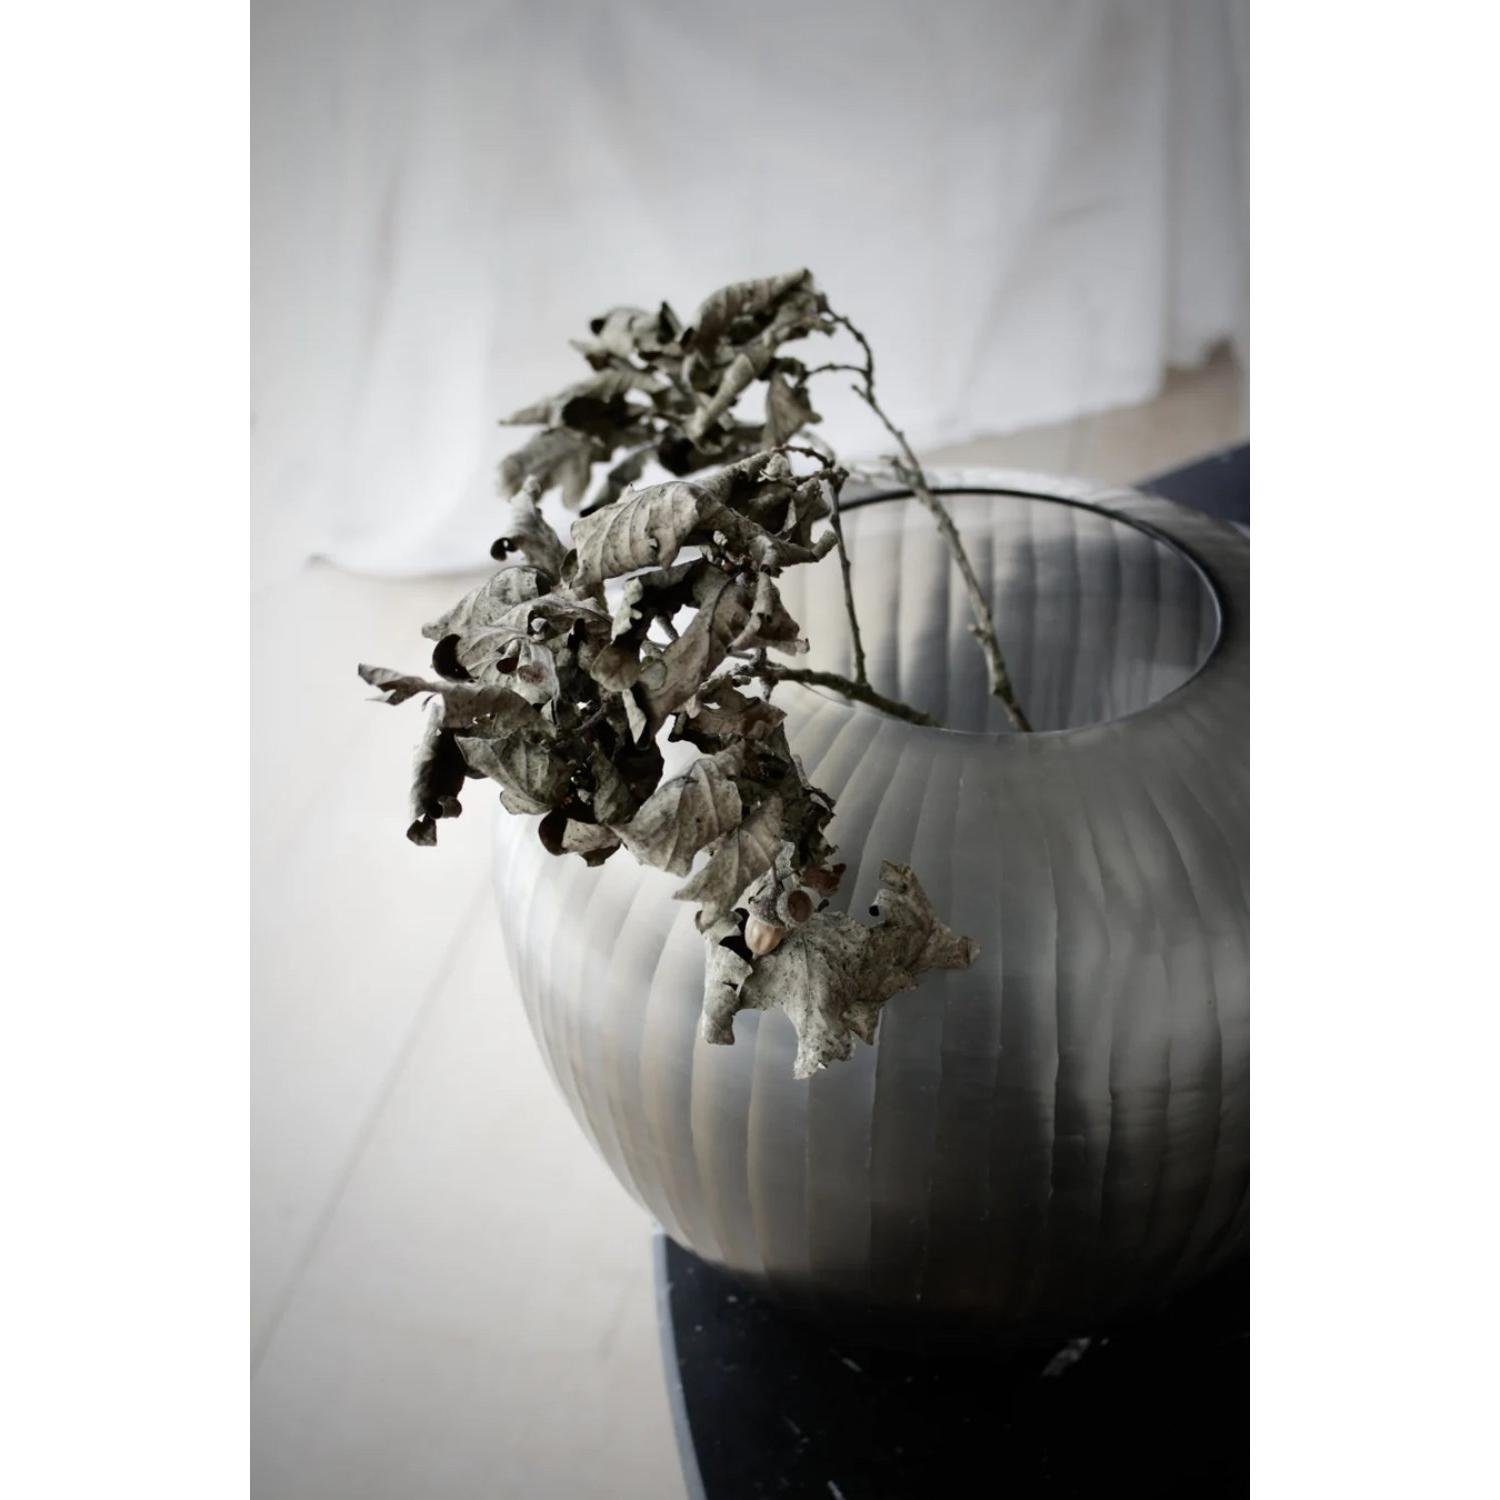 Dekovase Organic Vase cm) (36x32 Sand Nordstjerne